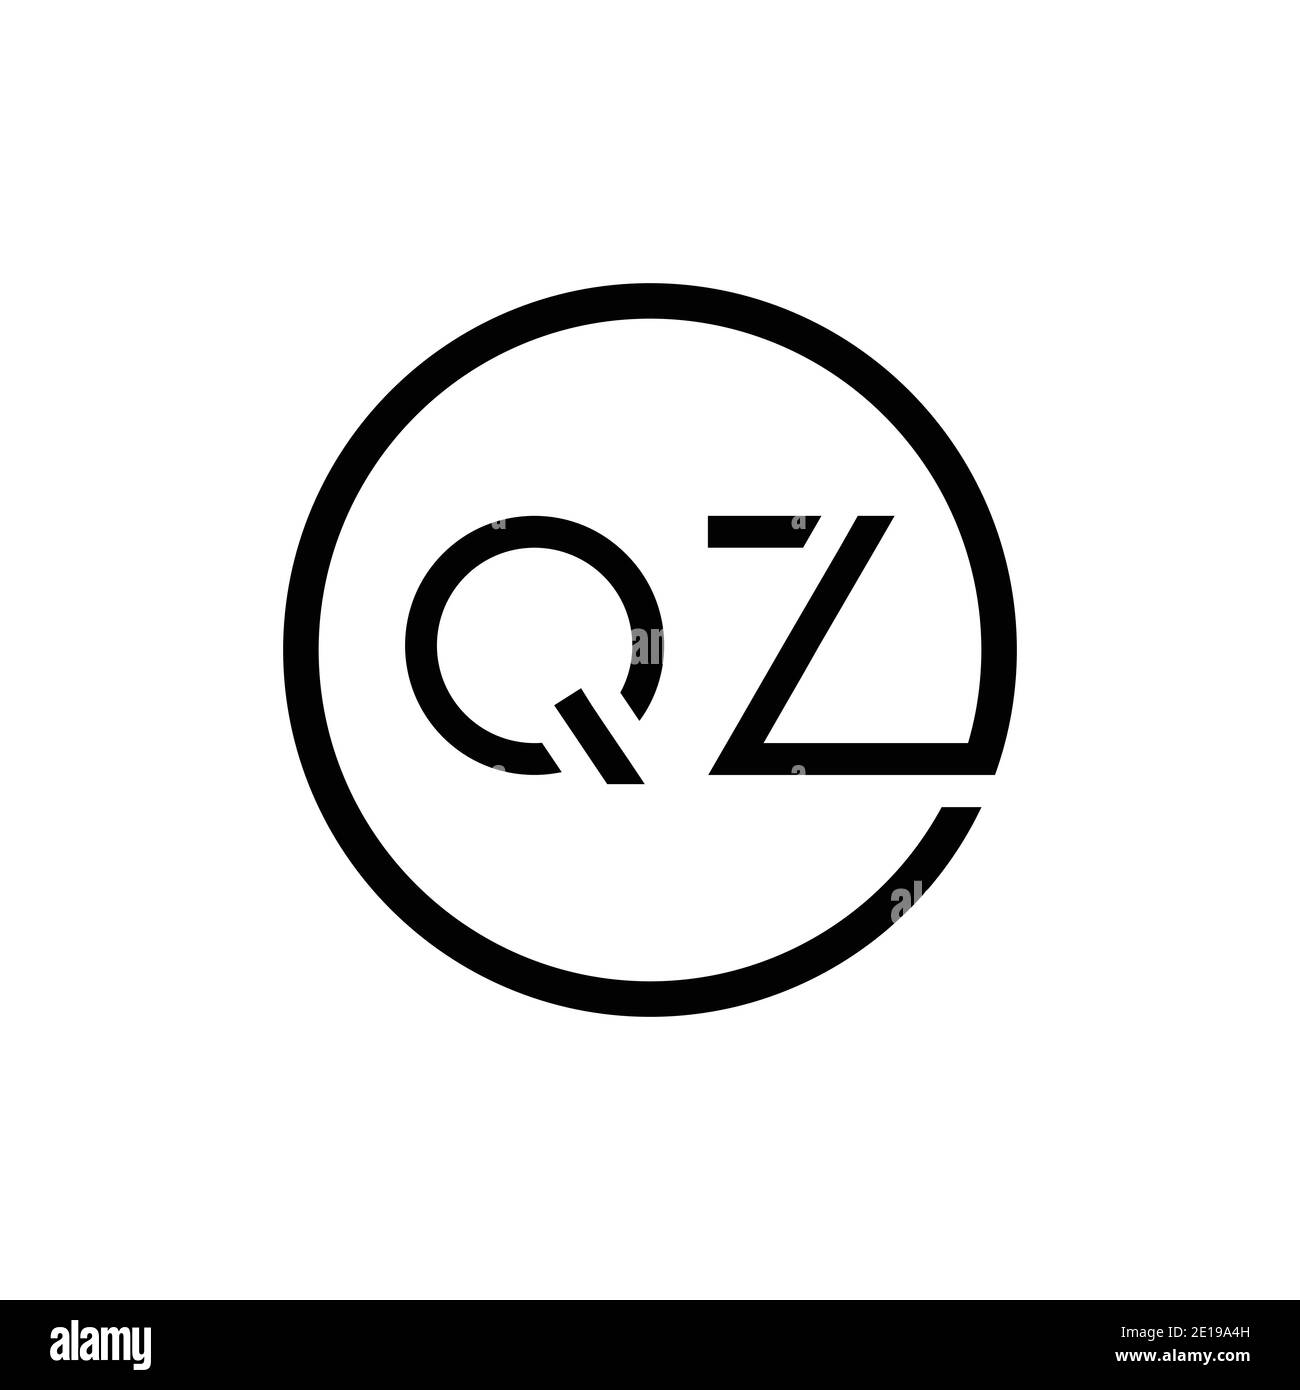 Initial Circle Letter QZ Logo Design Vector Template. QZ Letter Logo Design Stock Vector